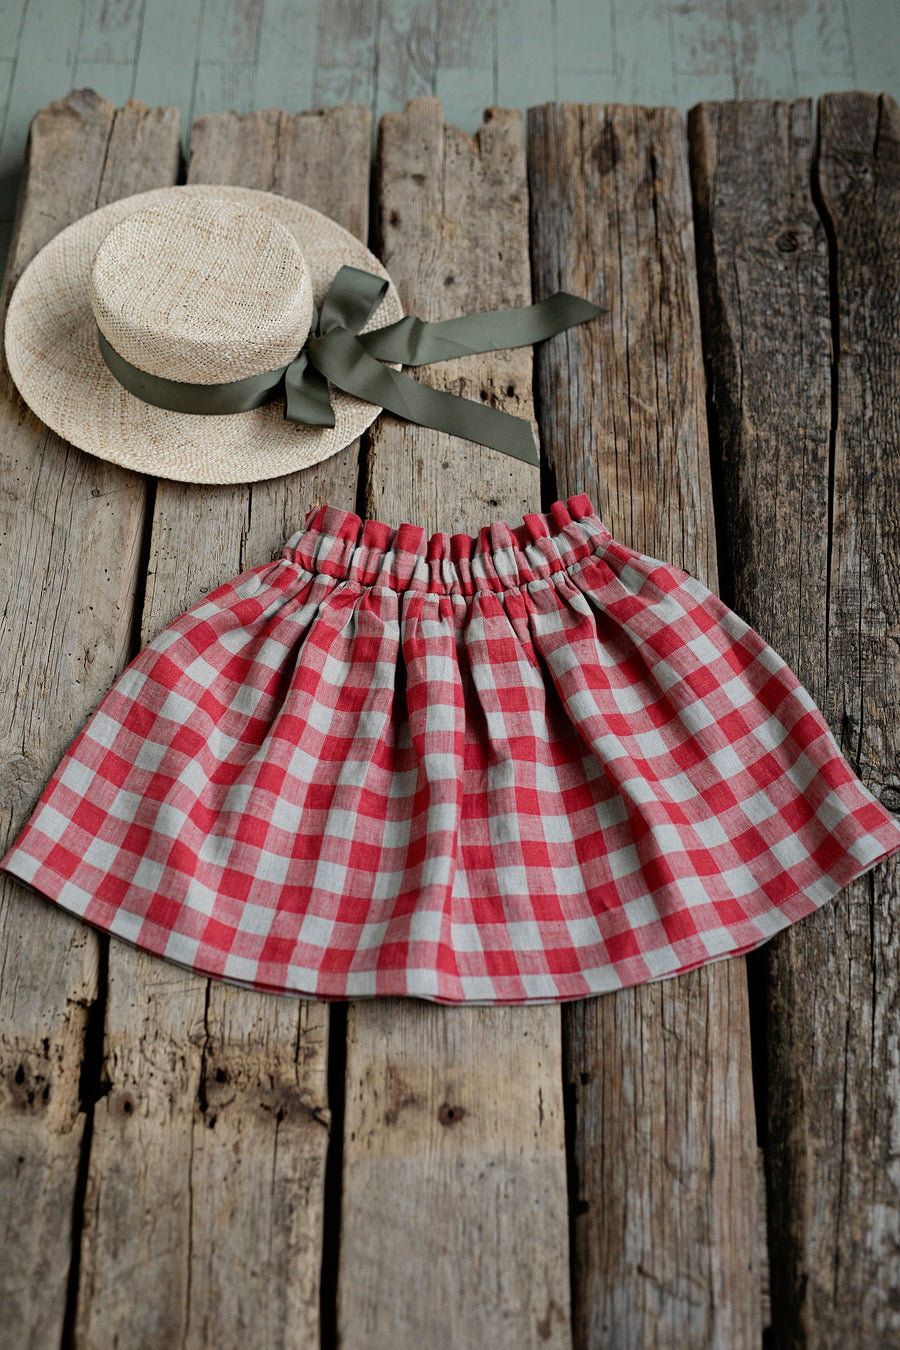 Garden Festive Midi  Skirt